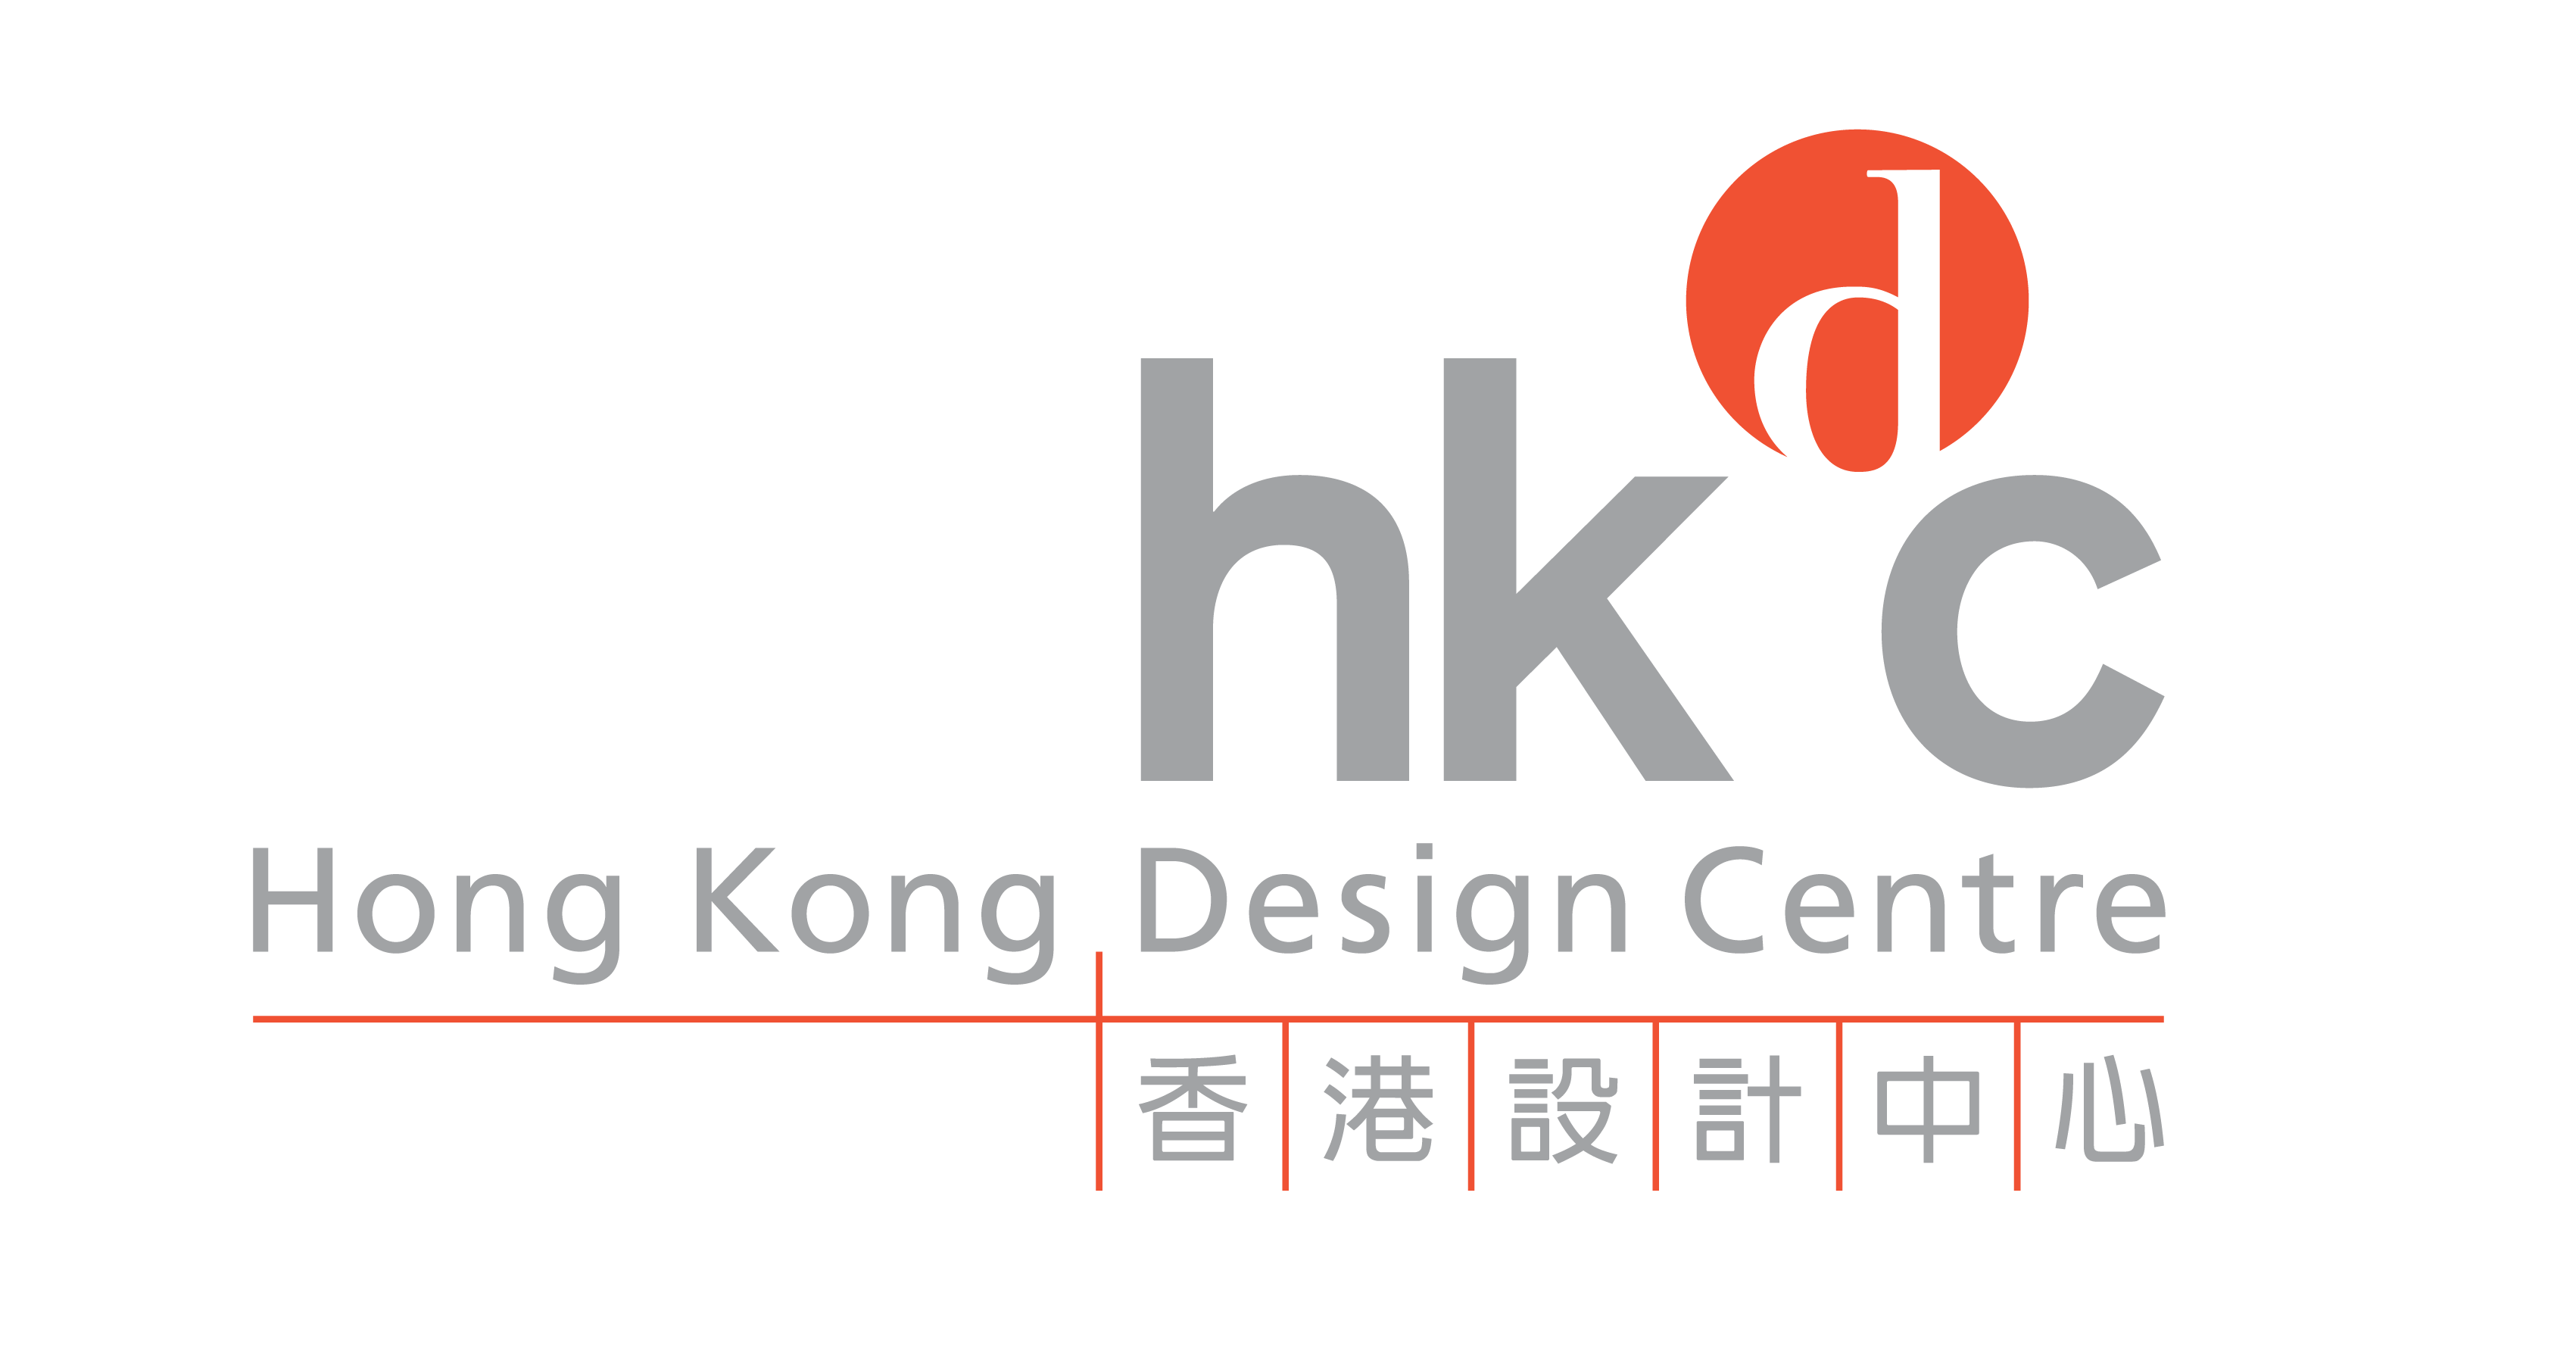 香港设计中心欢迎财政司司长 2024/25年财政预算案新措施   全方位打造香港品牌  发展高质量文化艺术及创意产业